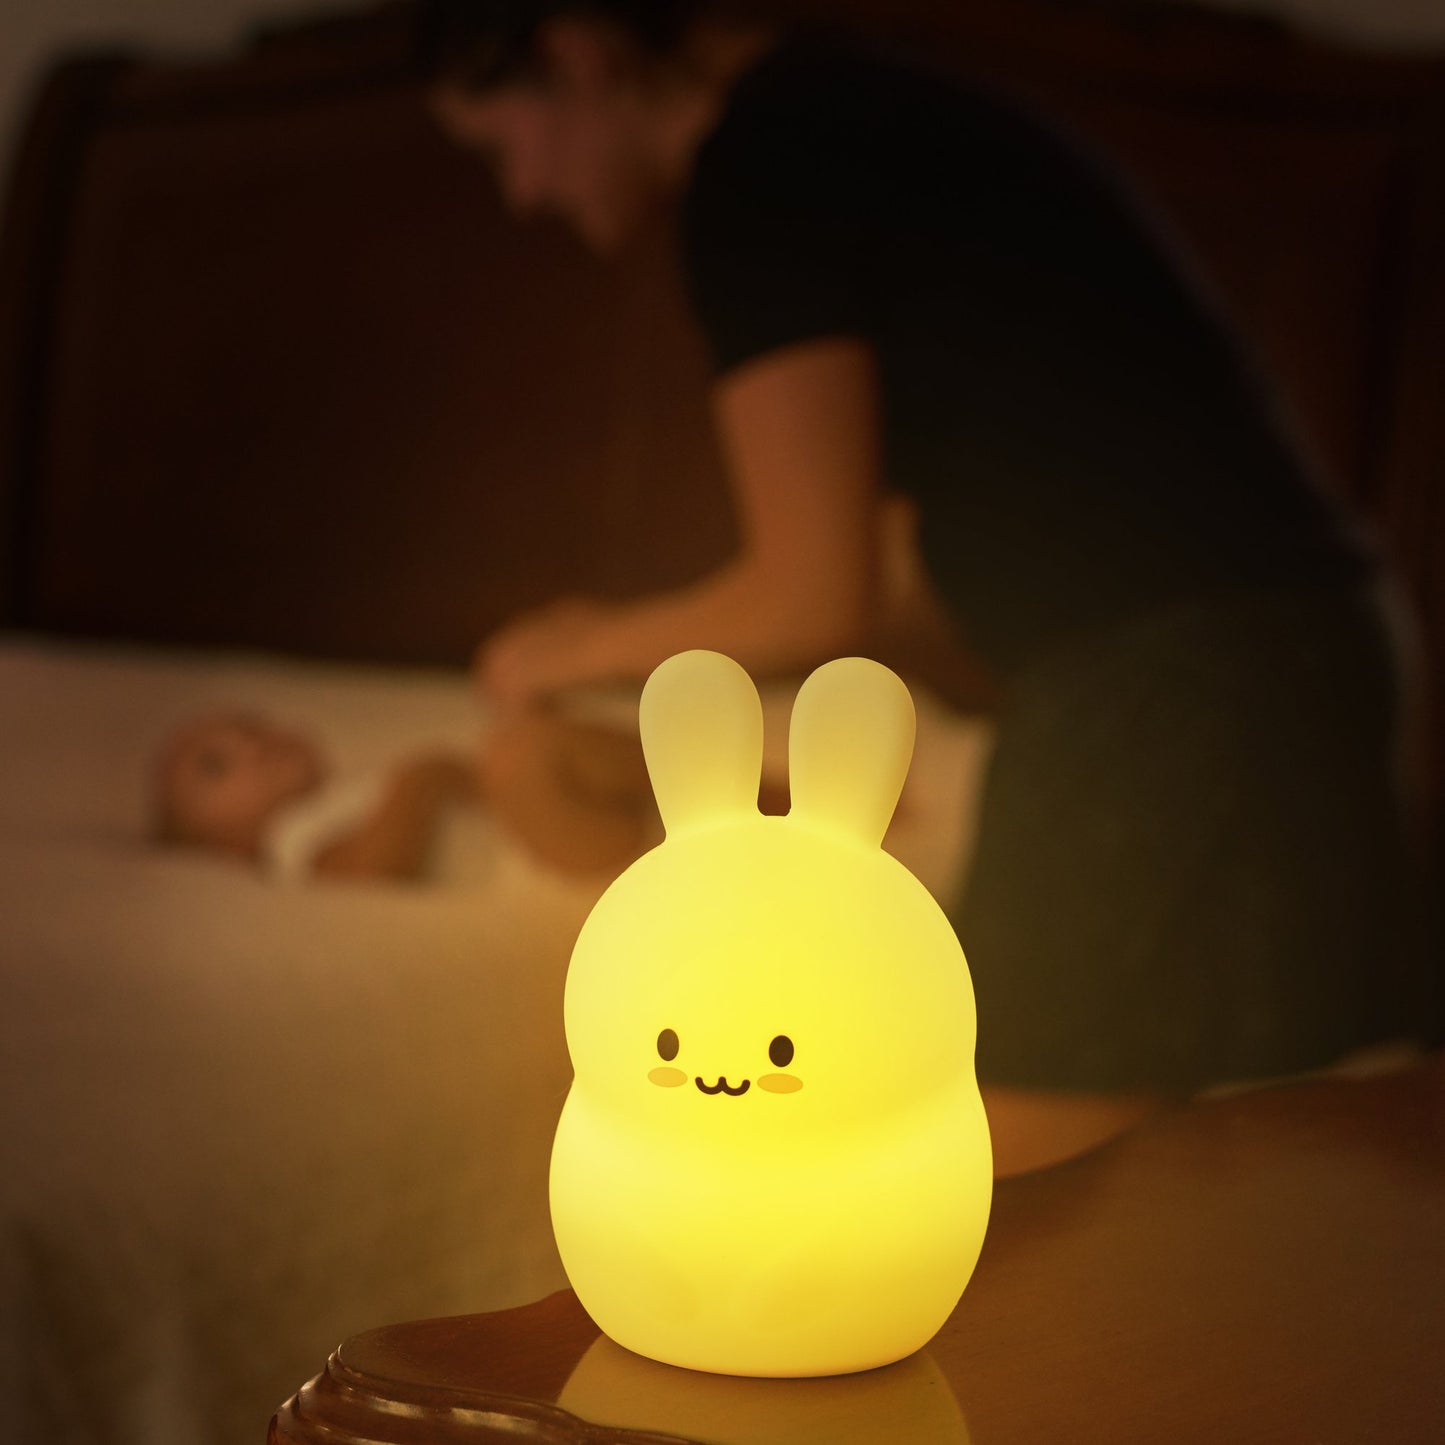 Lumipet Animal Nightlight - Bunny